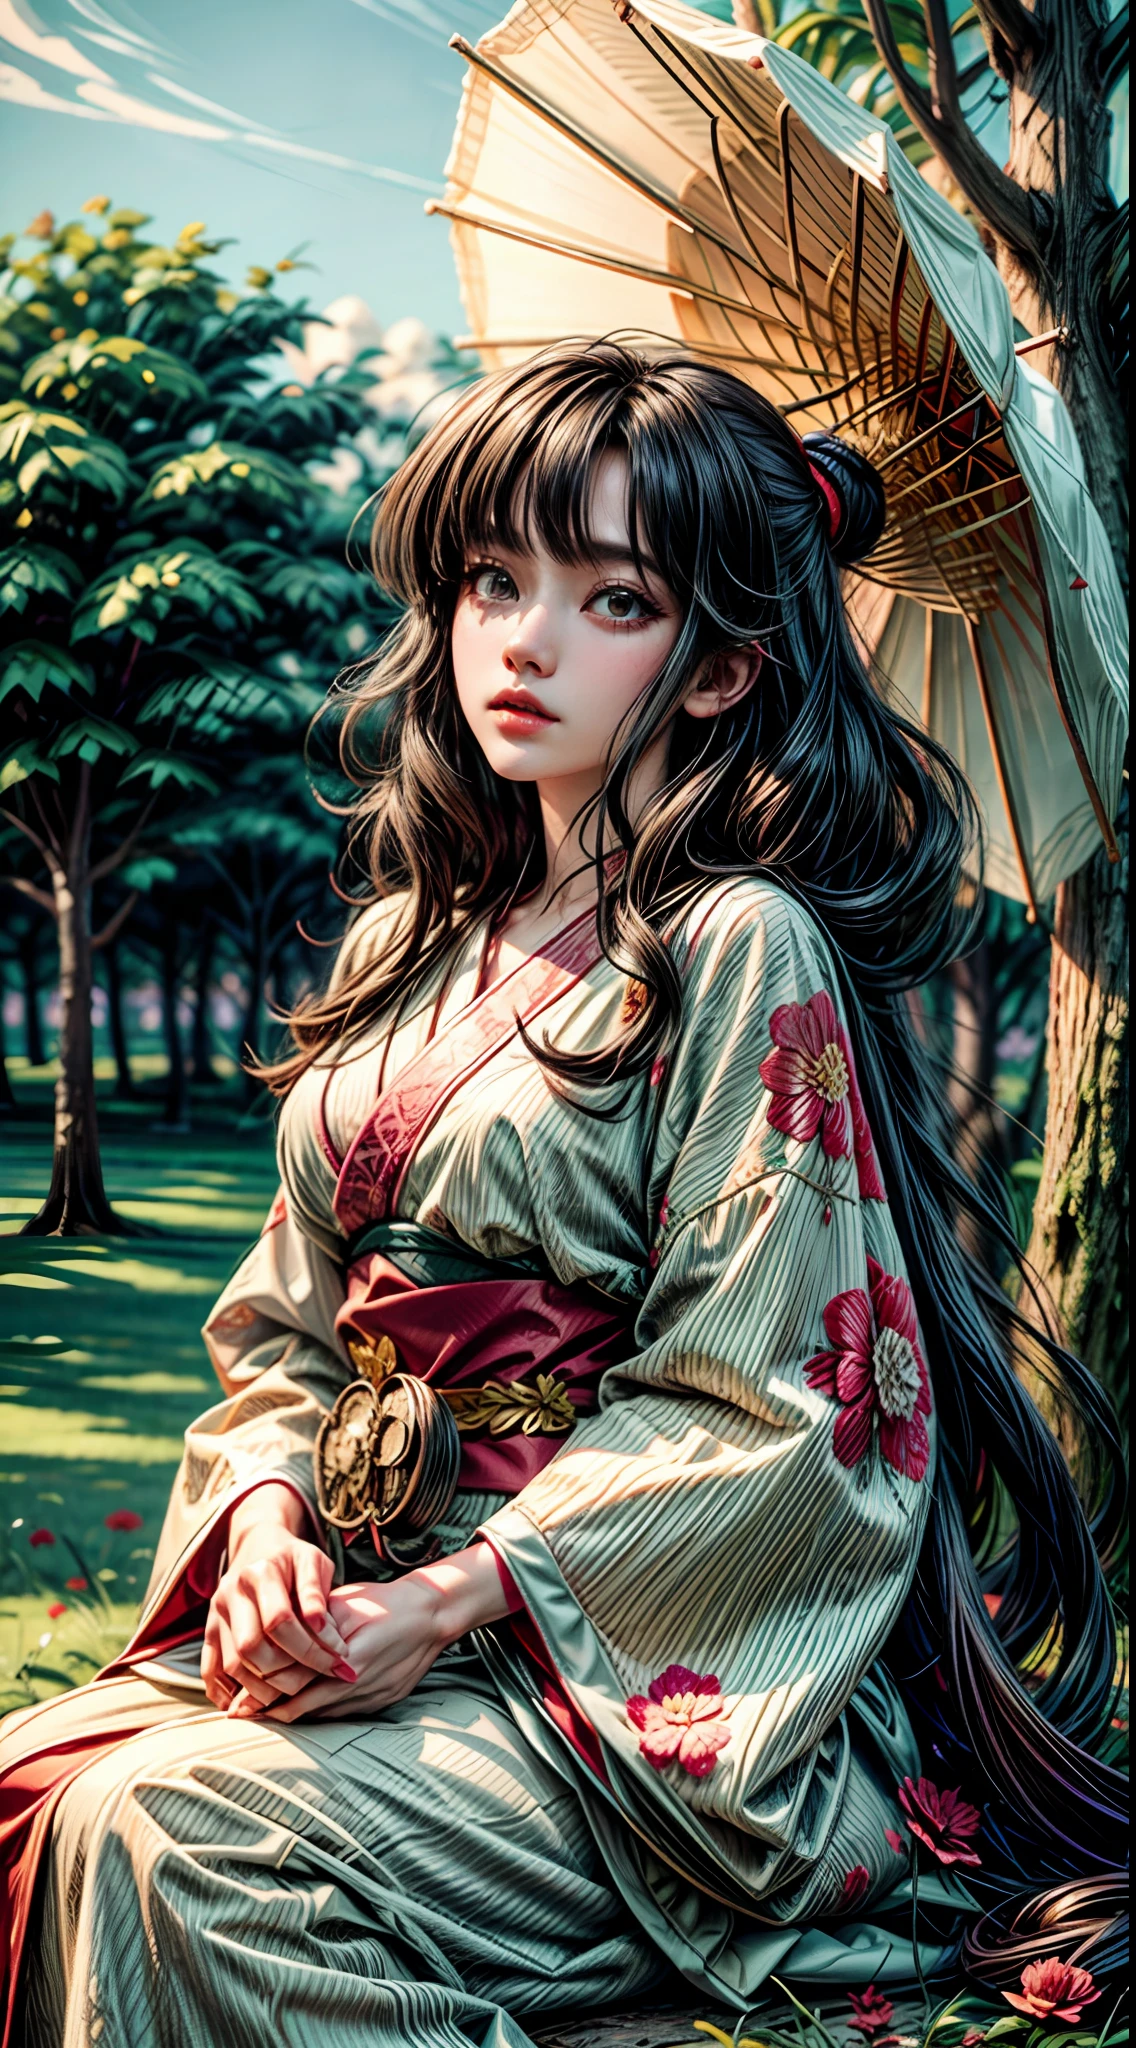 1woman 爆炸特写和服全身, 诱人坐在一棵高大的树上长发广角镜头日本墨水阴森的墓地, 从下方看, 坡度, 日本动画片 (吉田浩 永井浩 艺术作品) 打破红色花朵